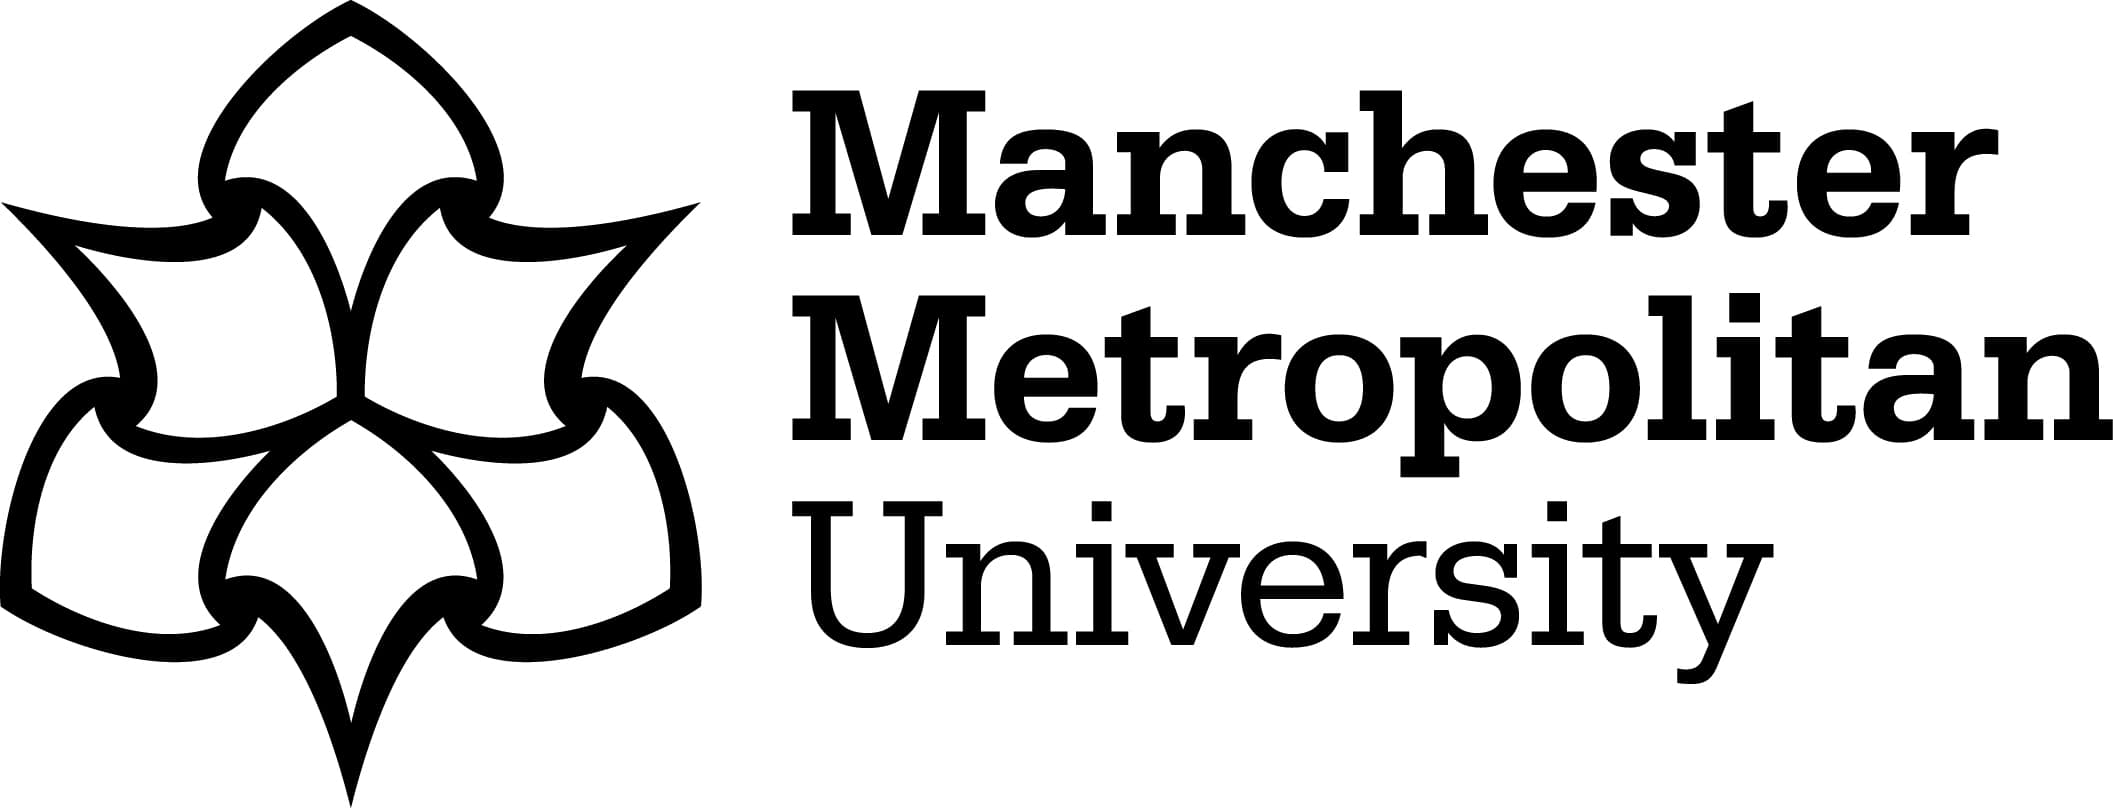 Manchester_Met_University